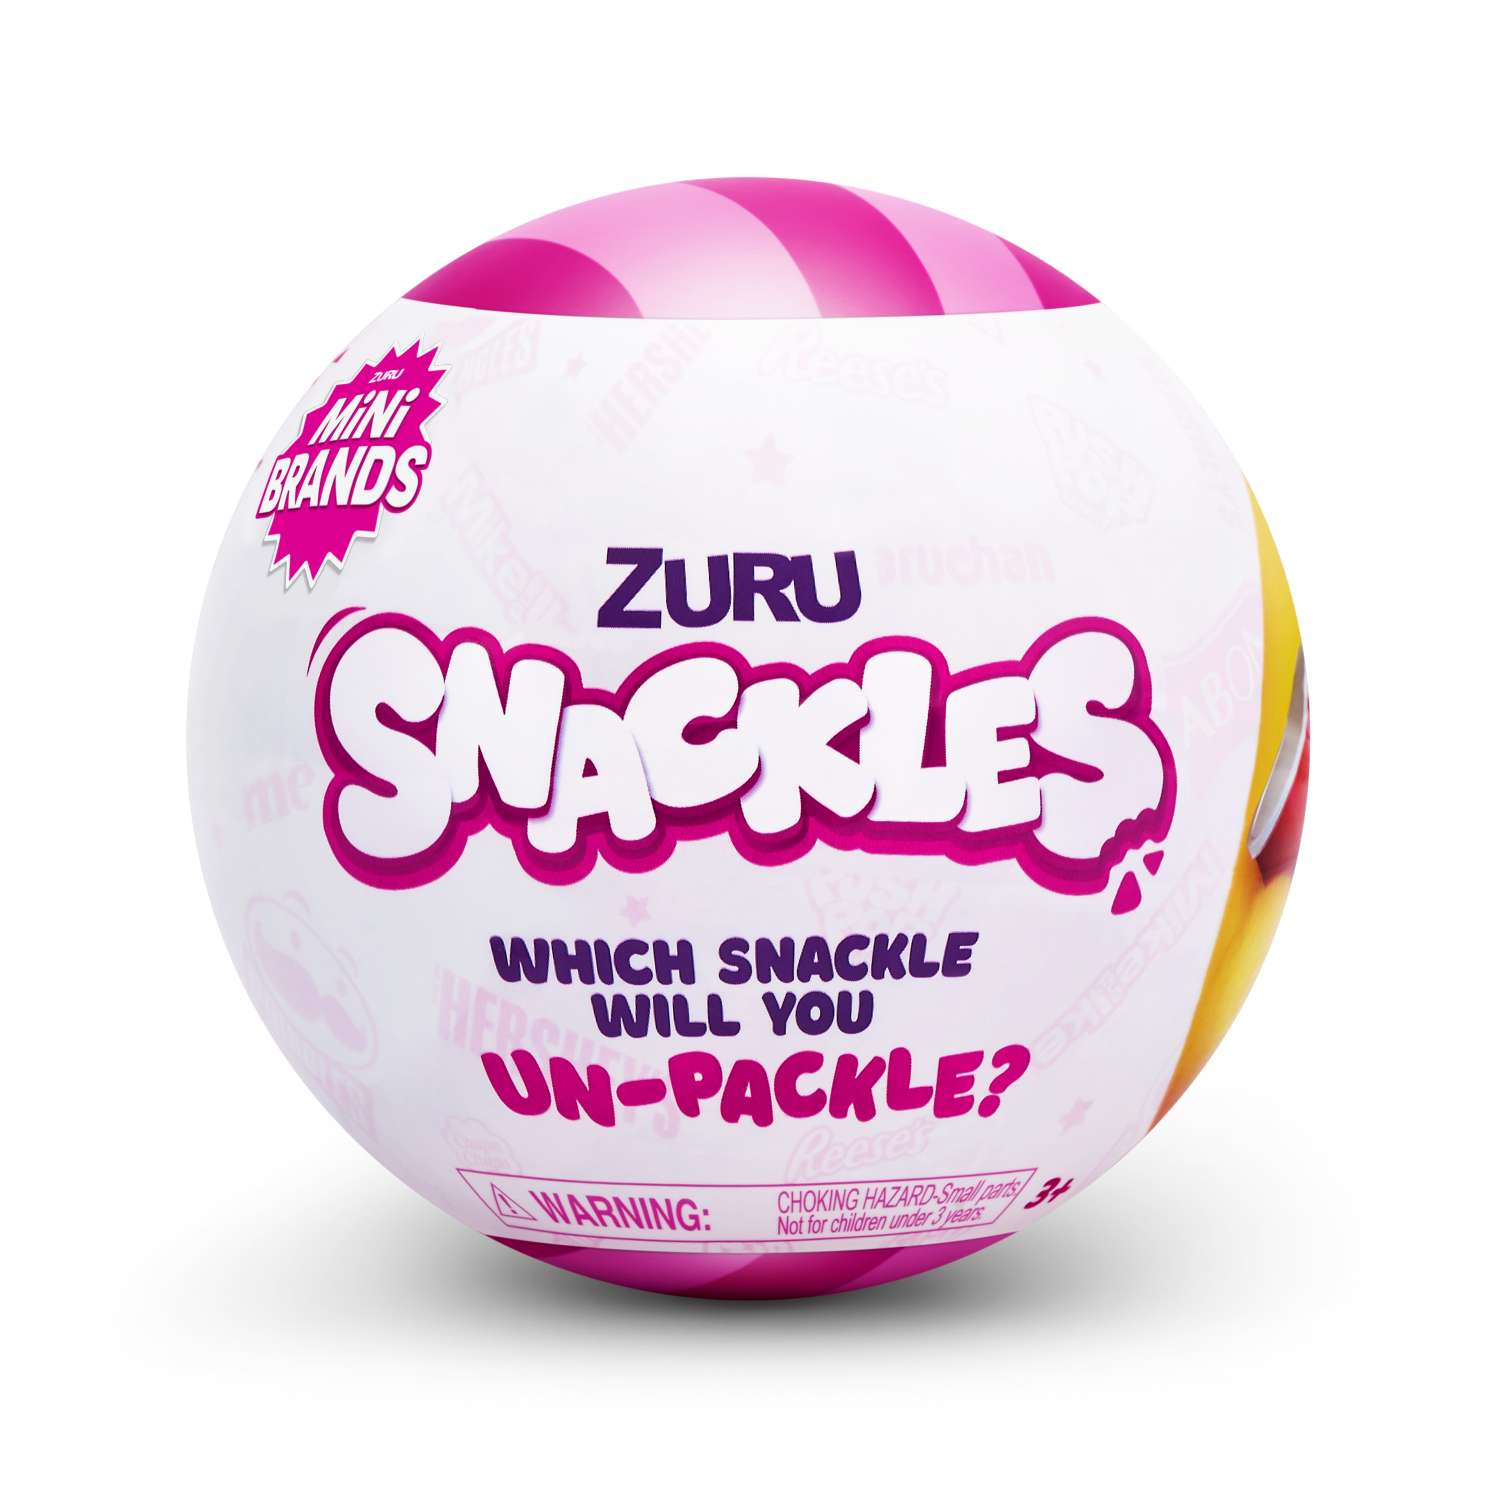 Игрушка Zuru 5 Surprise Snackles в непрозрачной упаковке (Сюрприз) 77510GQ1-S1W2-S006 - фото 1